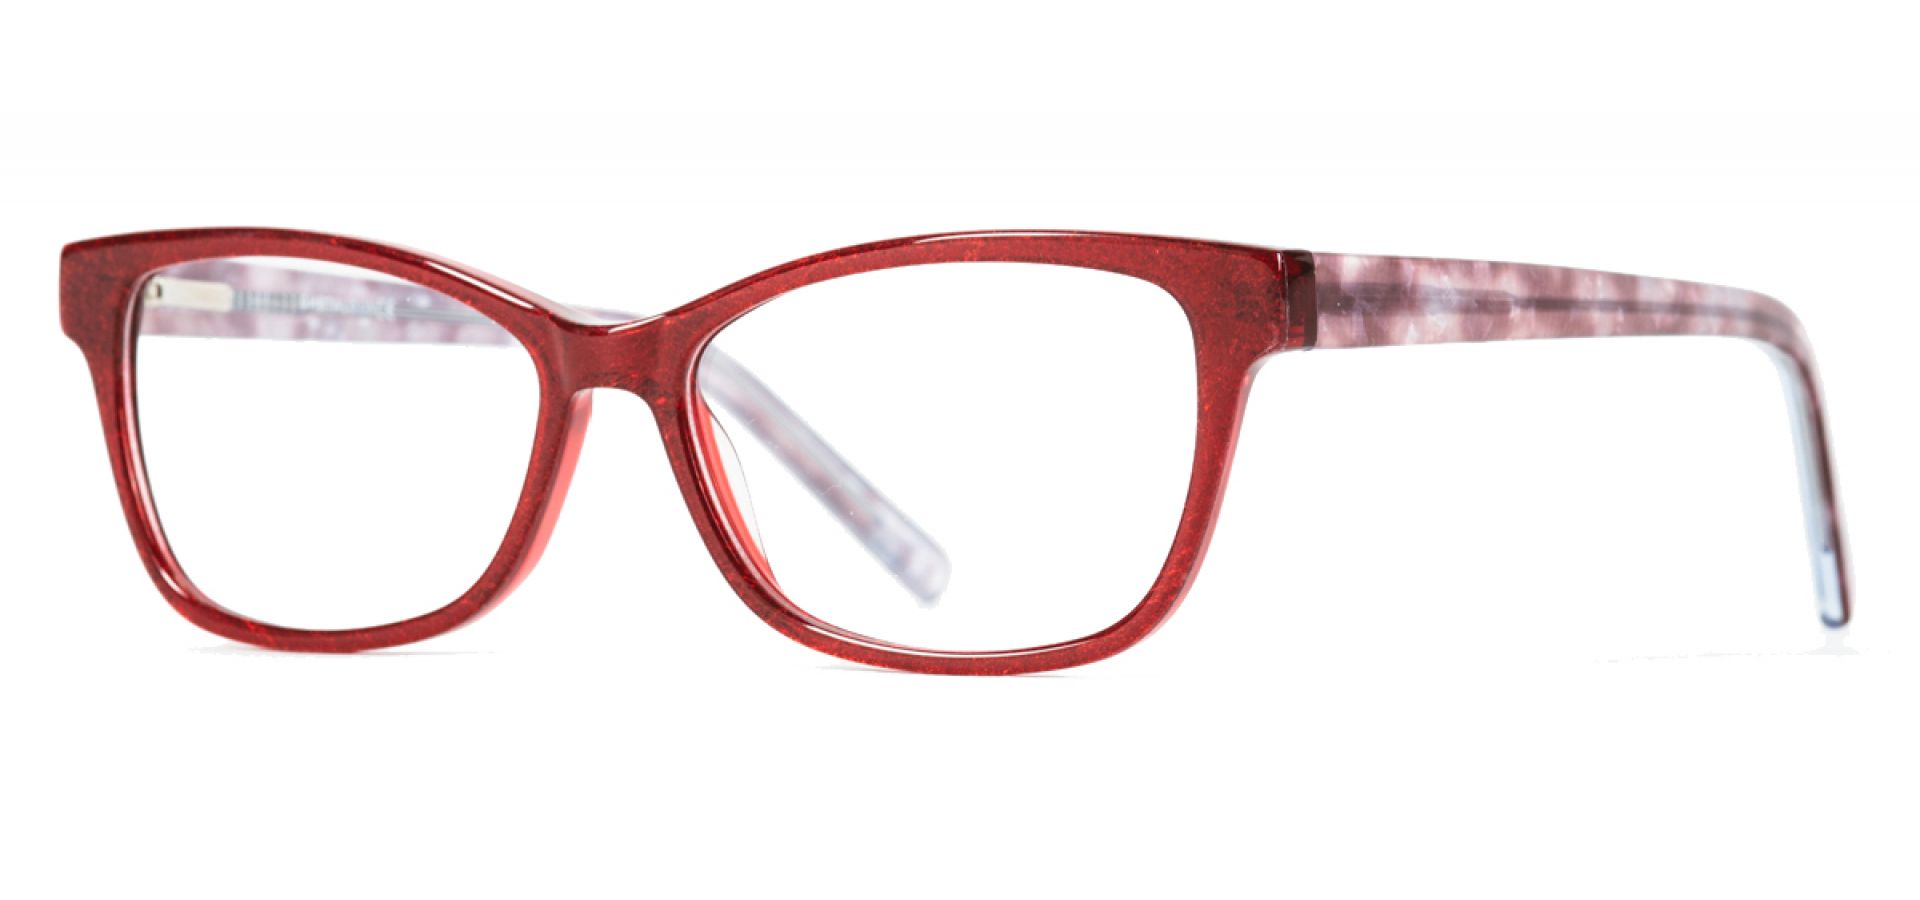 Dioptrijske naočale Ghetaldus NAOAČLE ZA RAČUNALO GHC105: Boja: Red Sparkling White, Veličina: 54/15/140, Spol: ženske, Materijal: acetat